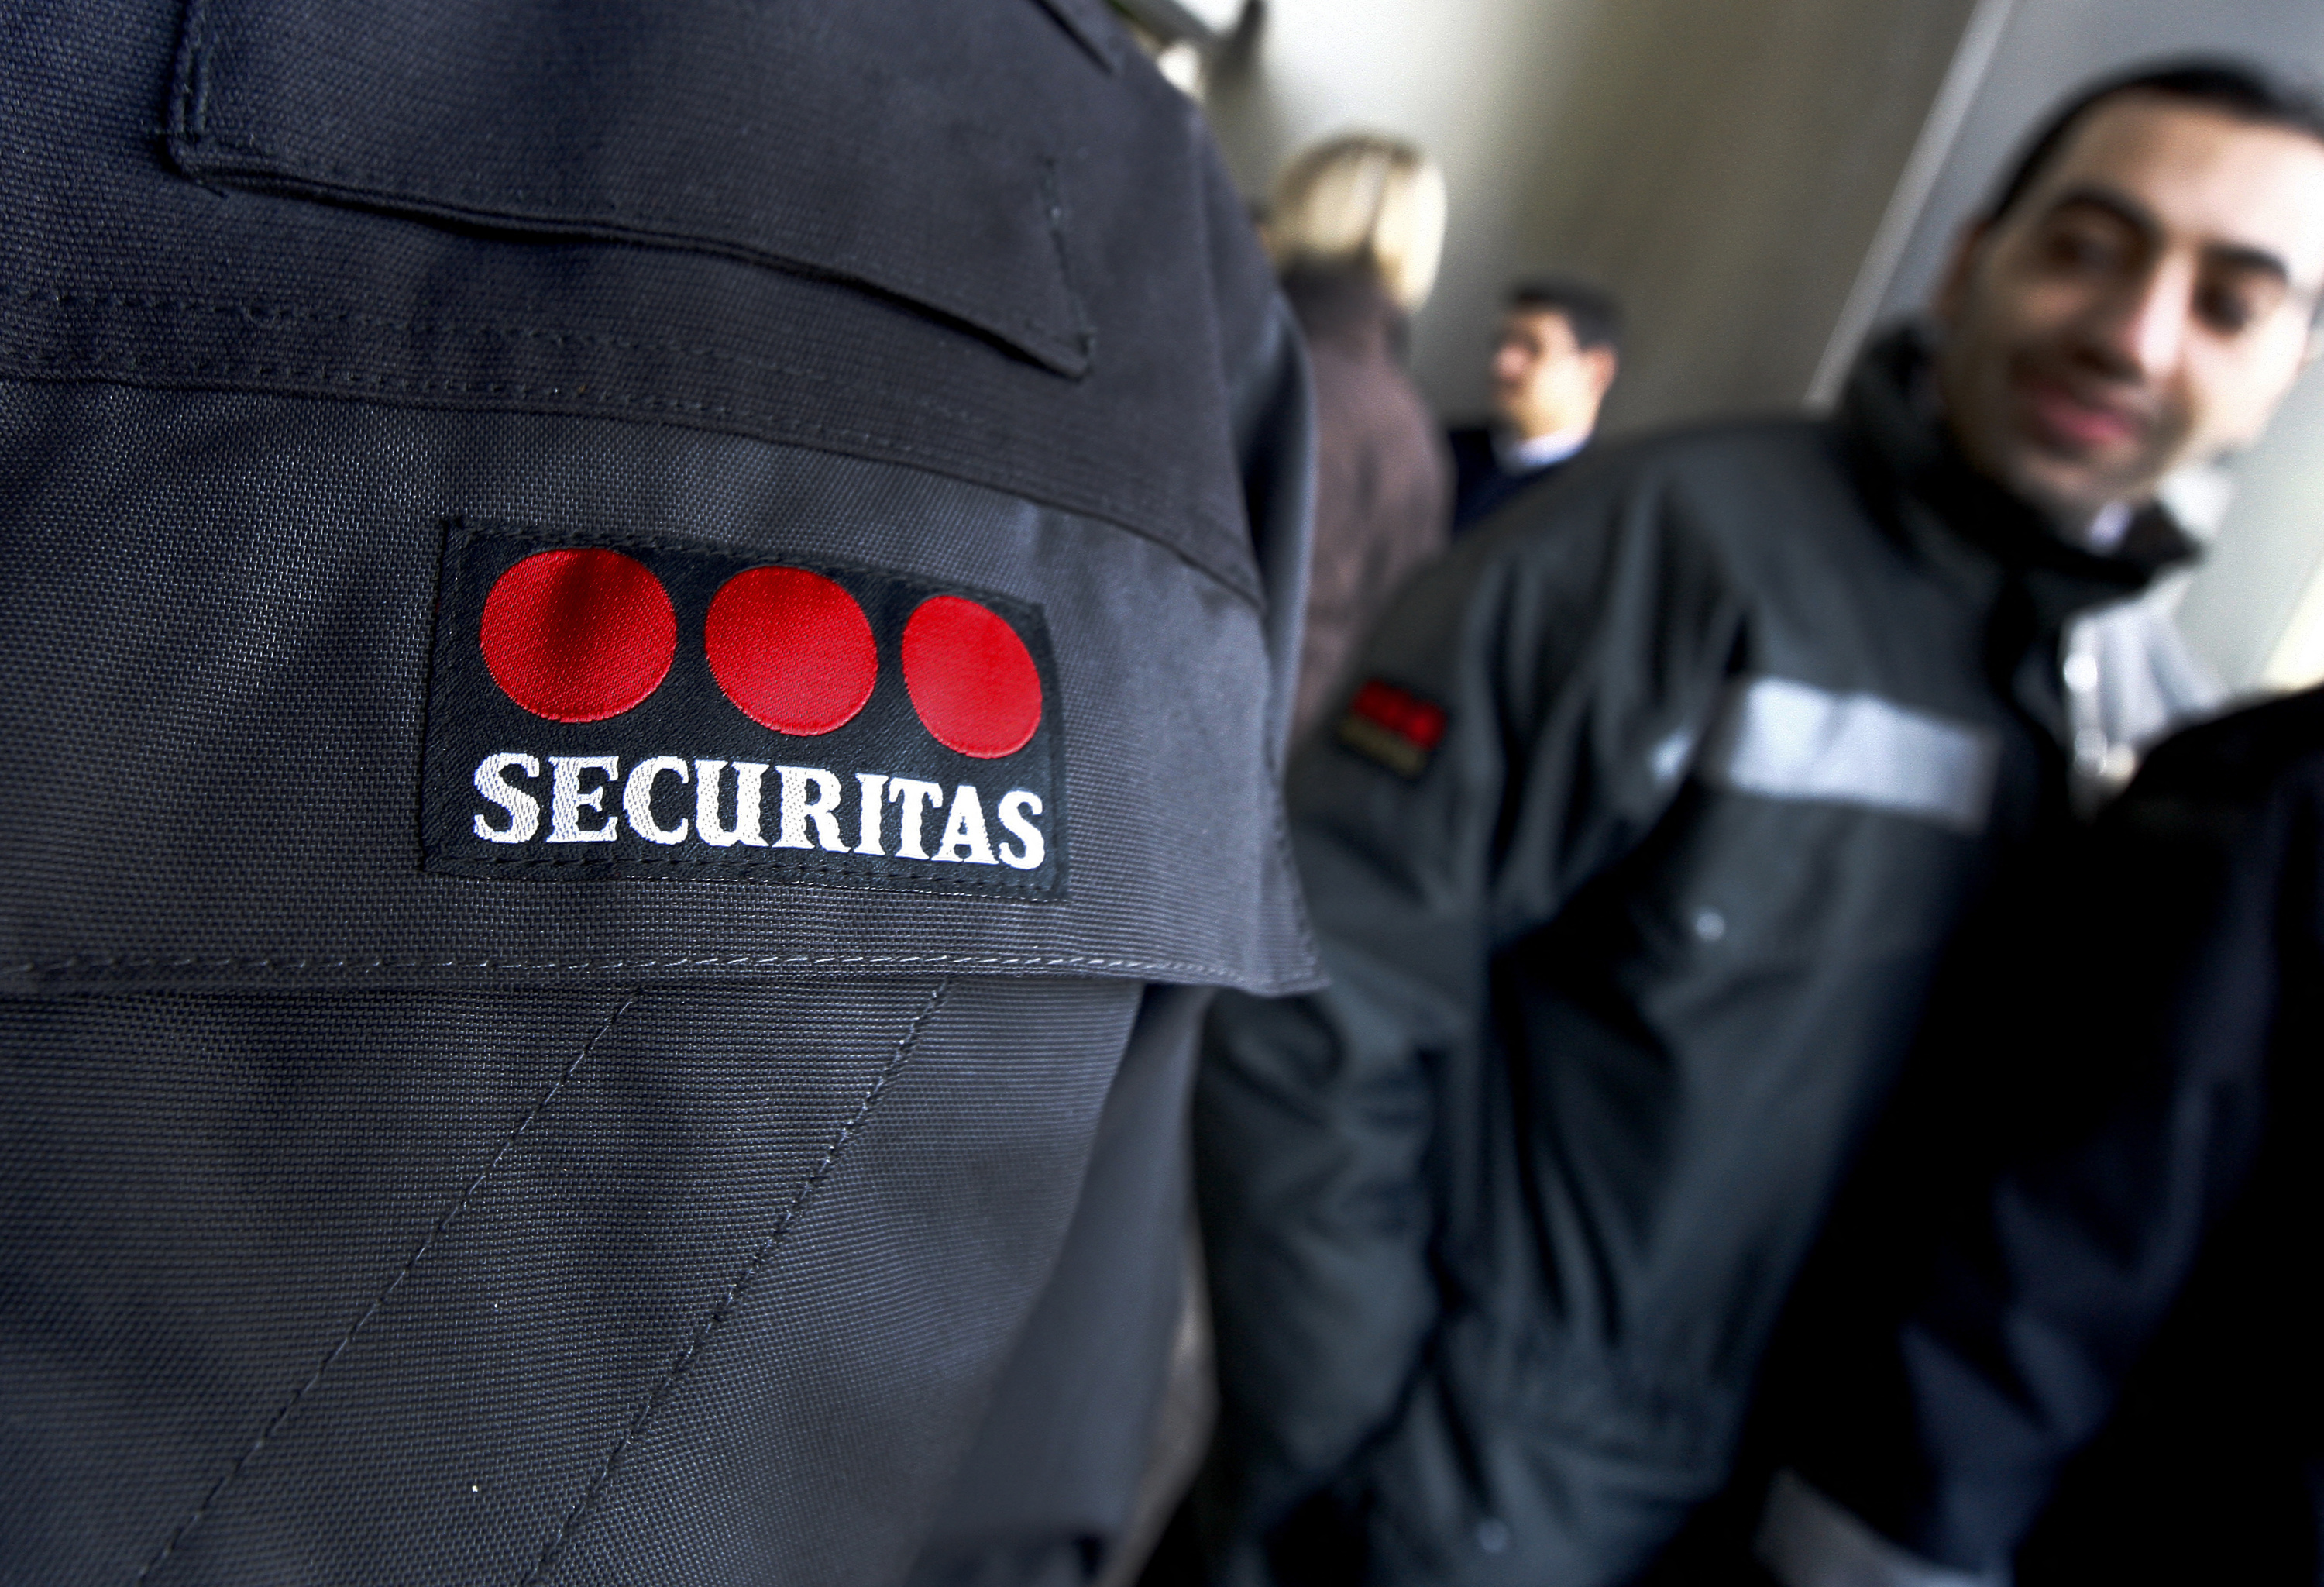 Securitas rachète l'activité sécurité électronique de Stanley Black & Decker pour 3,2 milliards de dollars